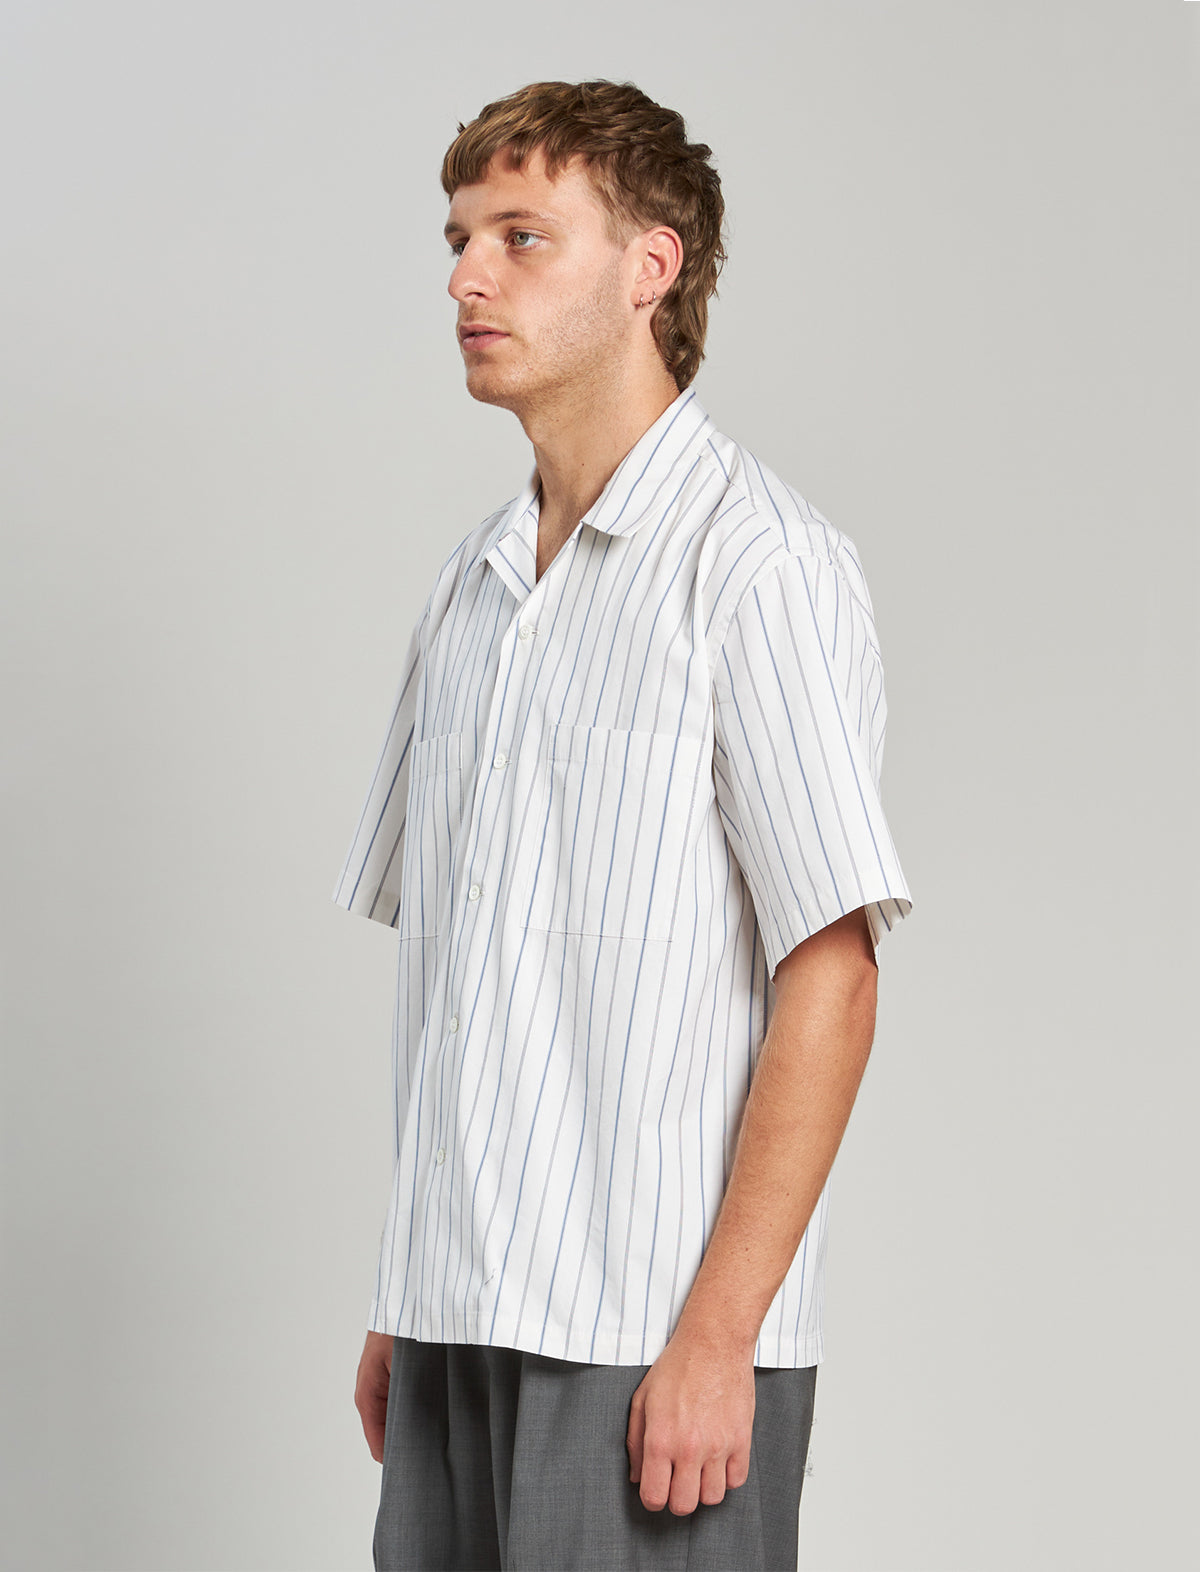 BARENA VENEZIA Cotton-Poplin Short-Sleeve Shirt in White Pinstripes